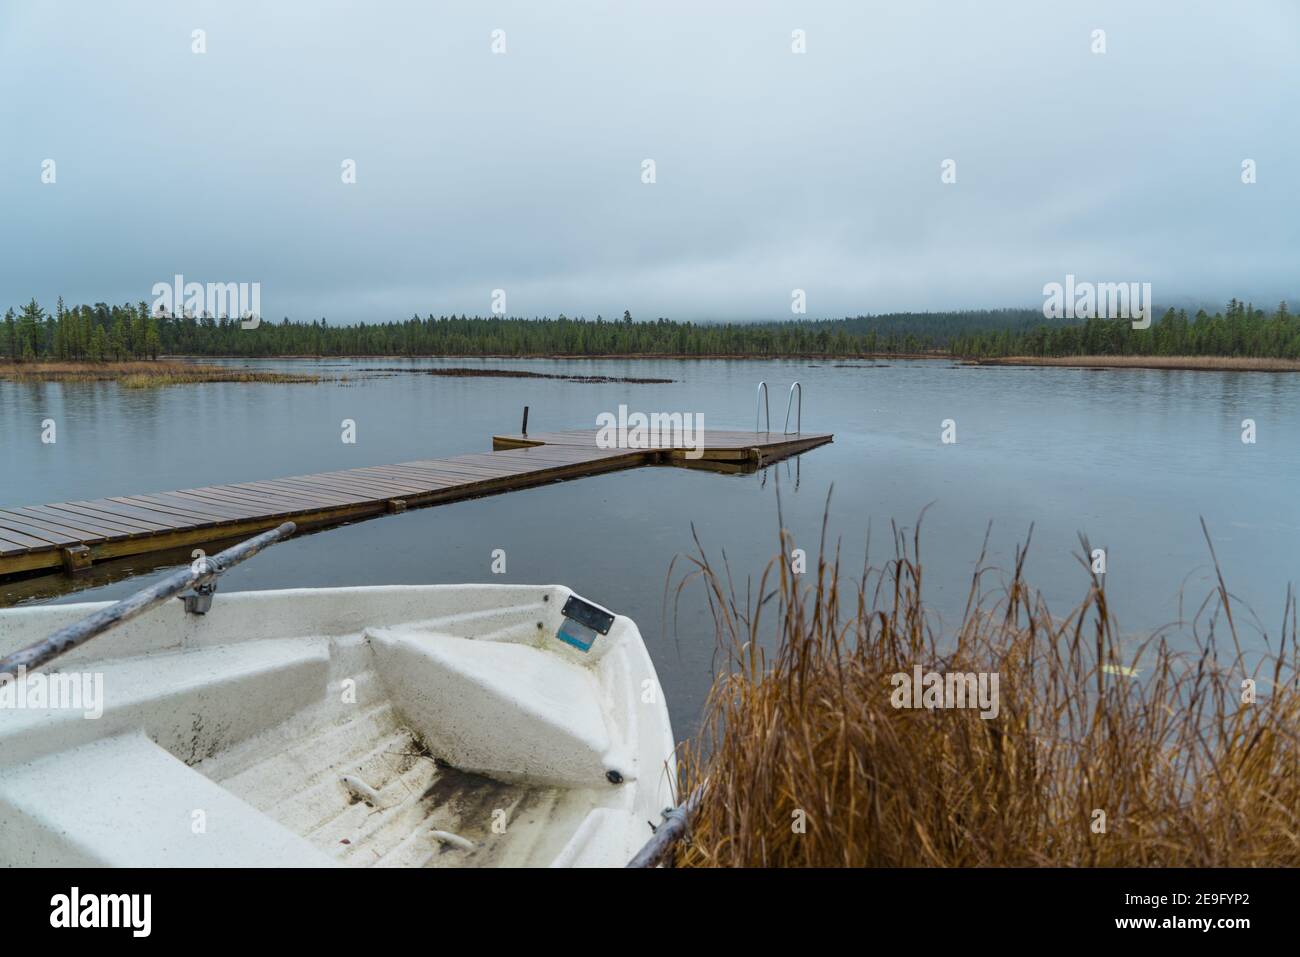 Vieux, sale, vieux bateau à ramer se trouvant à côté d'un petit lac d'arrivée typique à Inari, Finlande, Laponie. Jetée en bois dans une forêt pluvieuse paisible et relaxante Banque D'Images